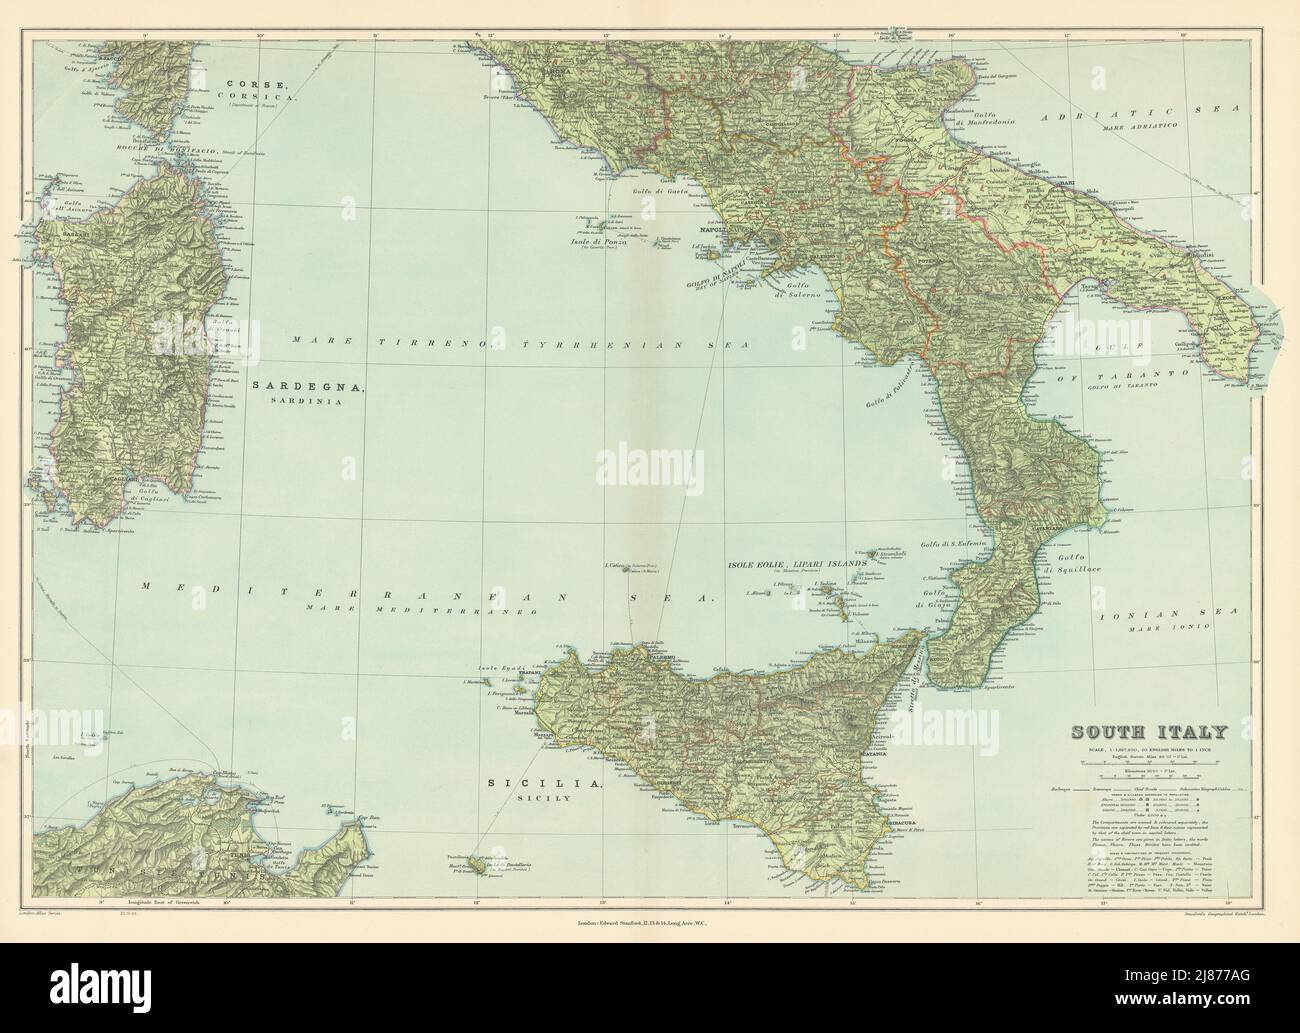 South Italy. Sicily Calabria Puglia Abruzzo Lazio Campania. STANFORD 1904 map Stock Photo